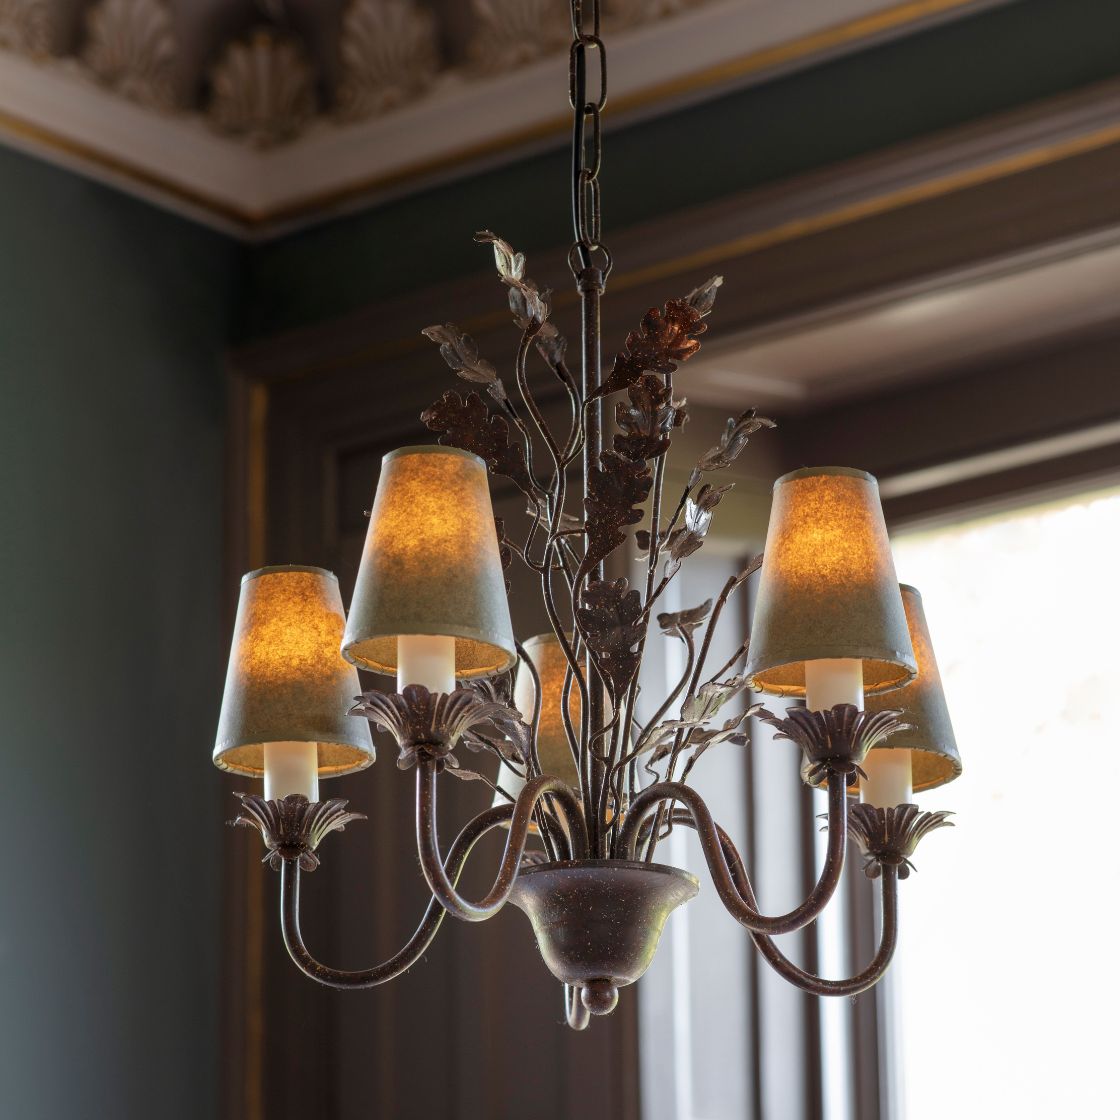 Oakleaf chandelier - Beaumont & Fletcher